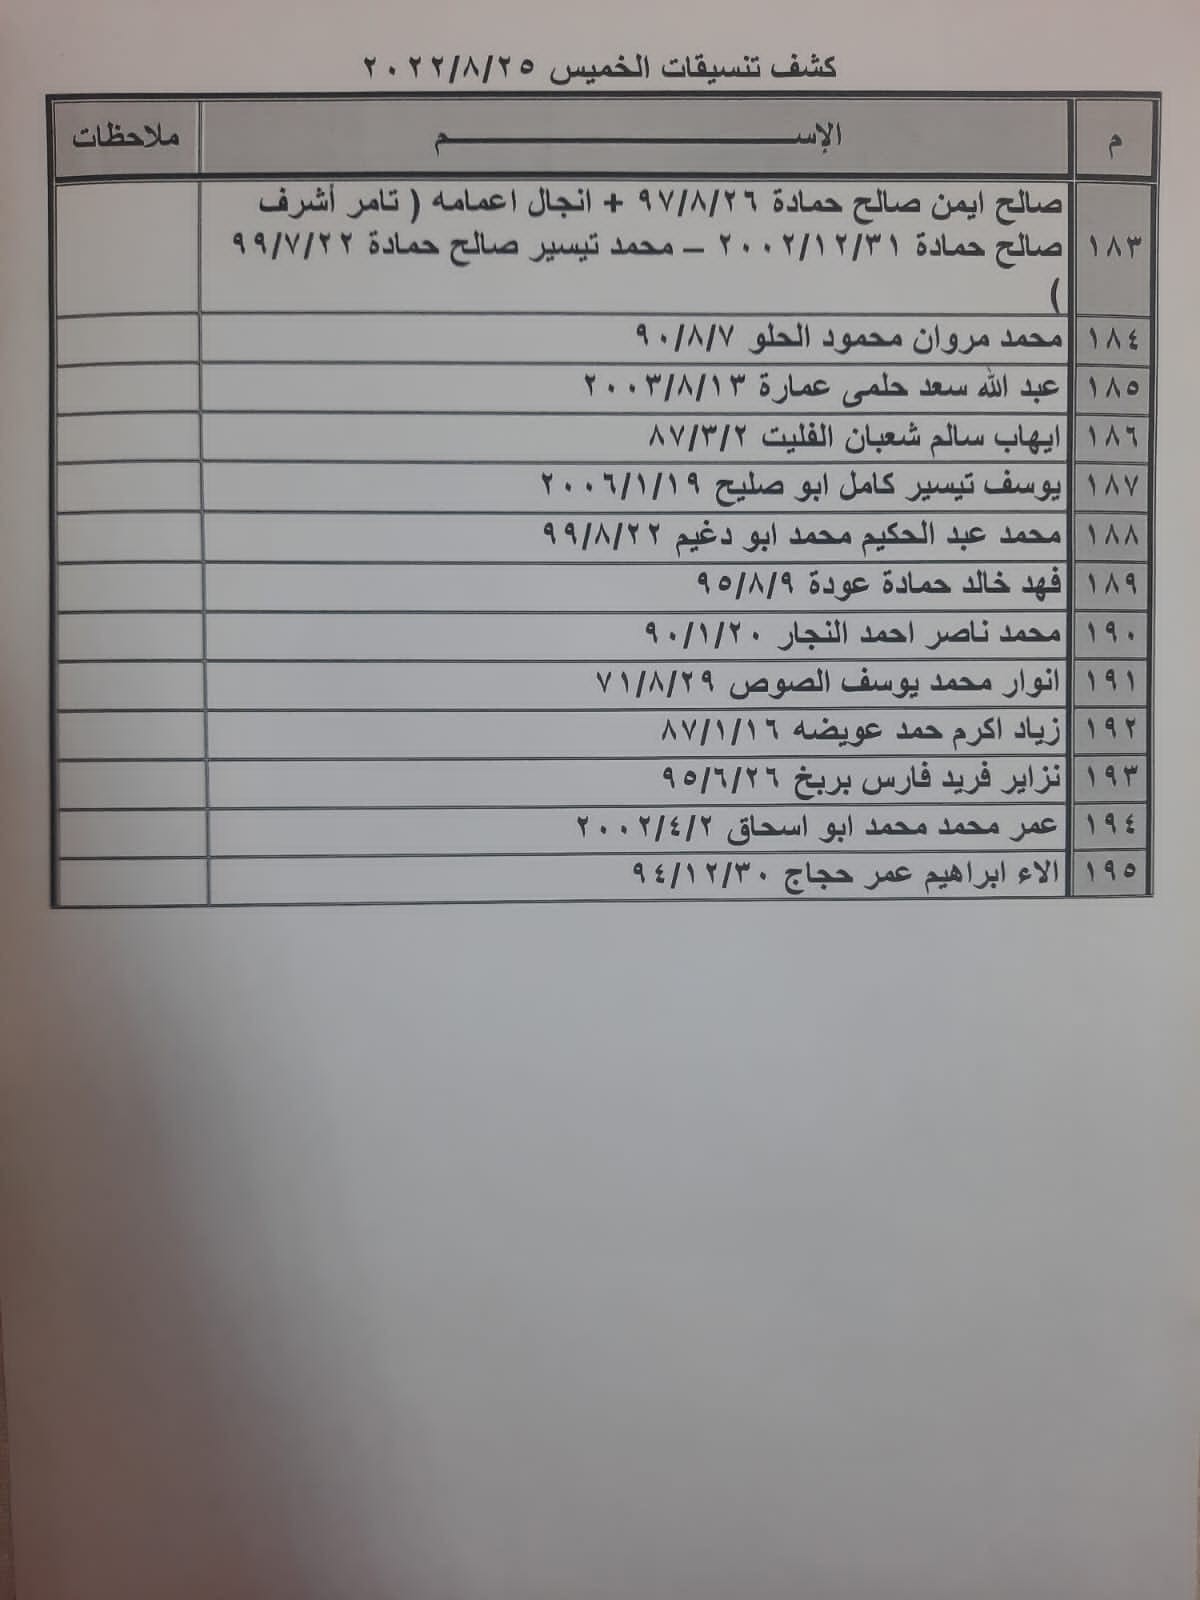 بالأسماء: كشف "تنسيقات مصرية" للسفر عبر معبر رفح الخميس 25 أغسطس 2022